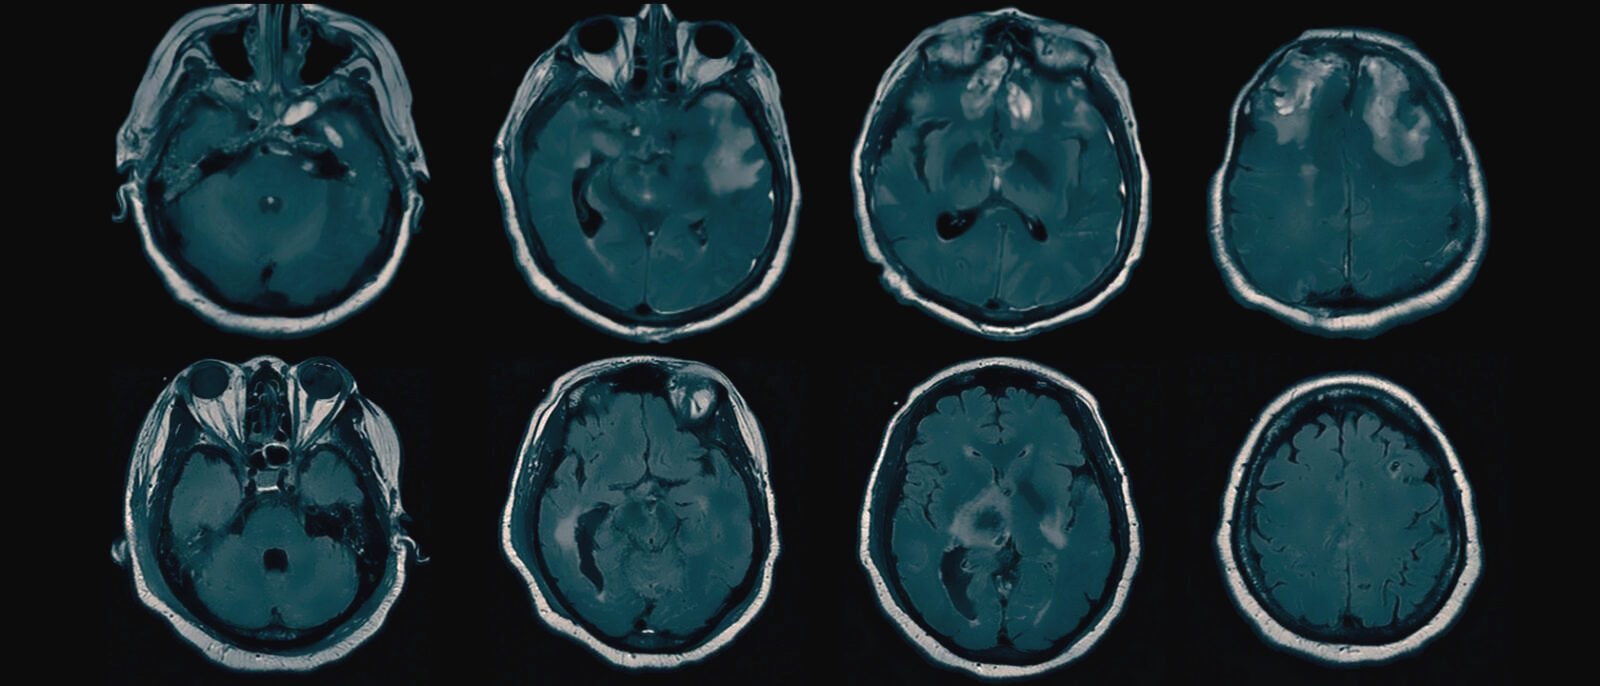 mri brain scans generic